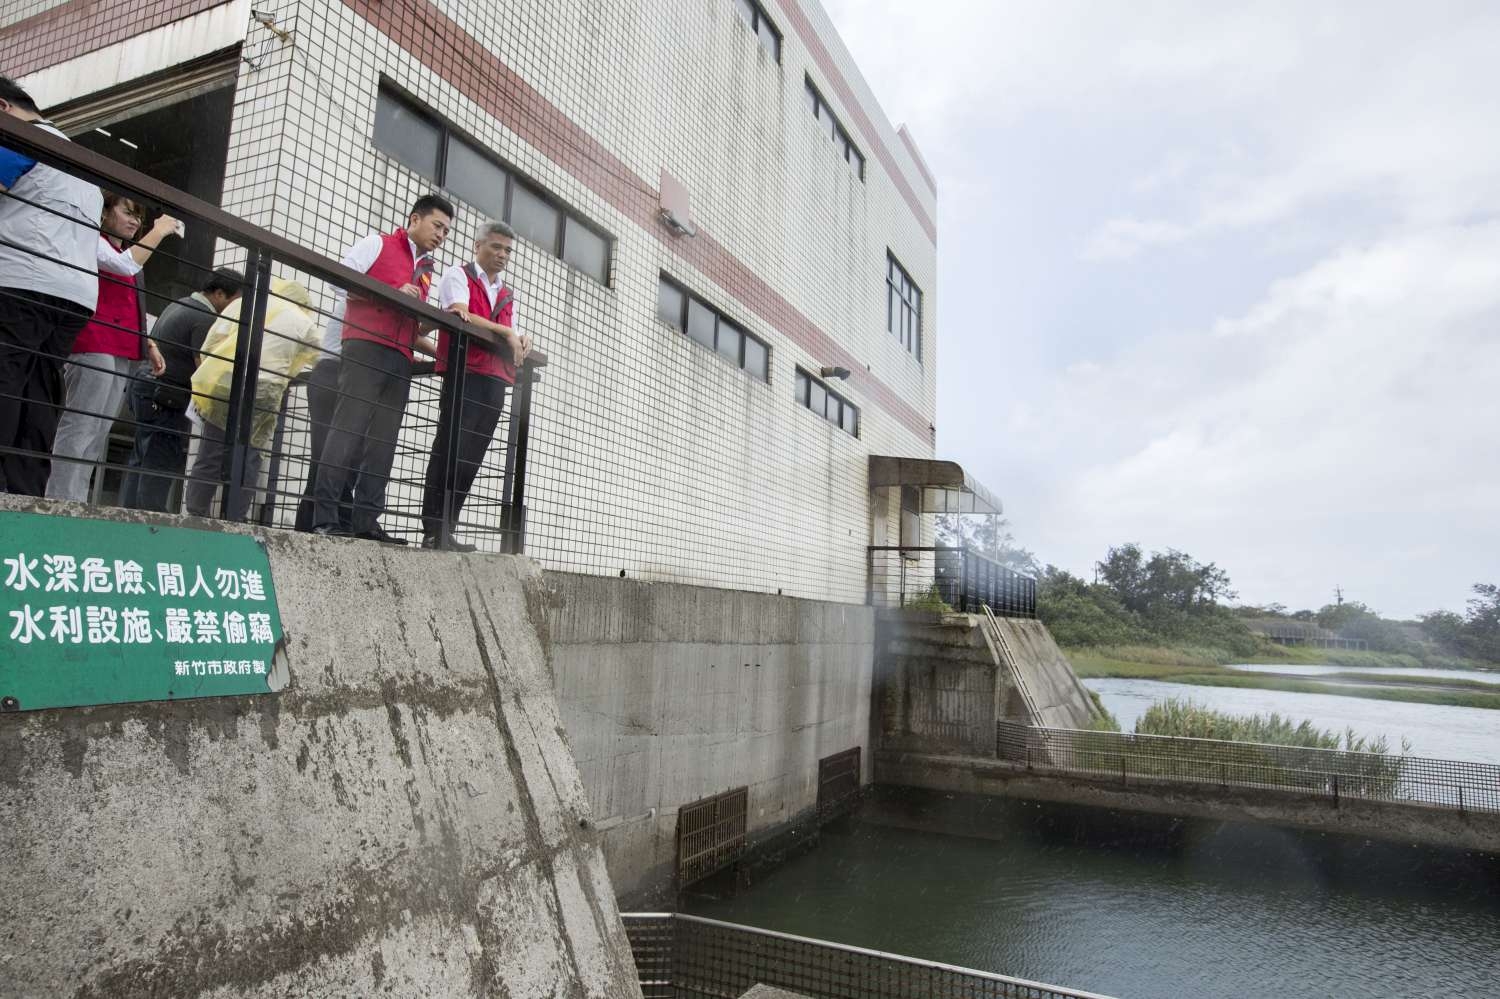 防範強颱瑪莉亞 林智堅市長視察舊港滯洪池及金城湖抽水站